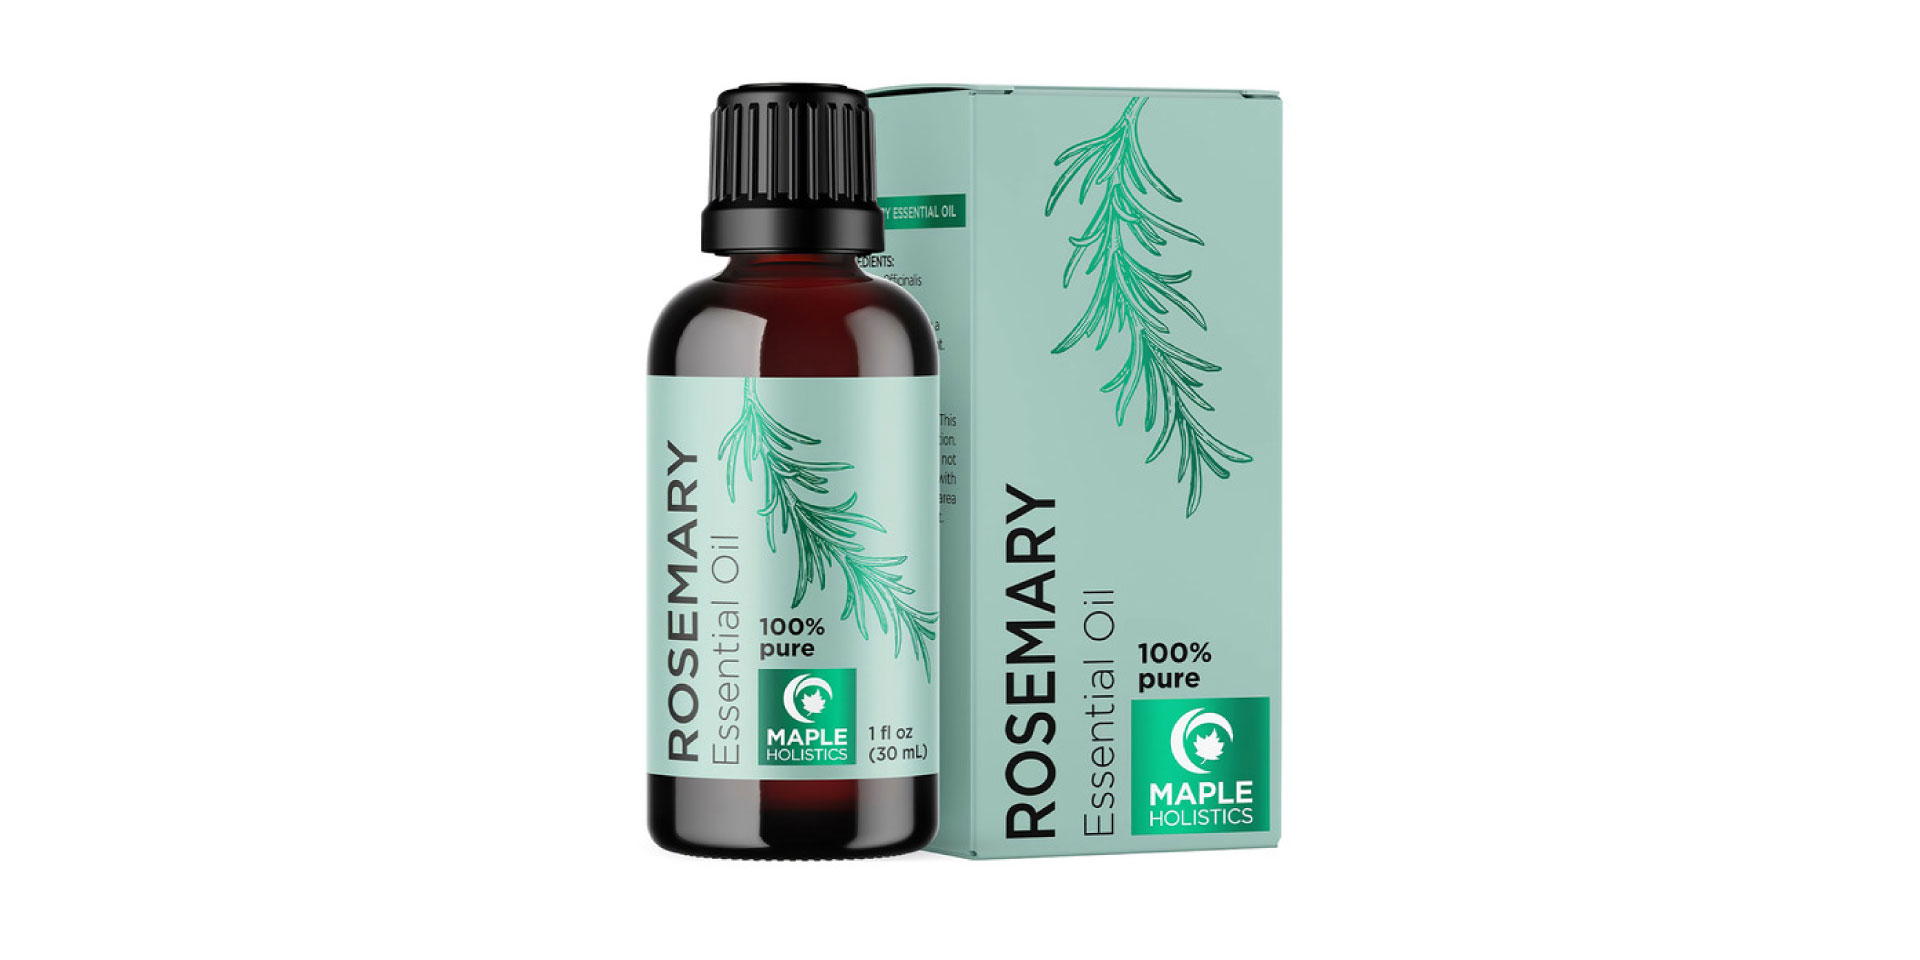 Maple Holistics Rosemary oil for hair